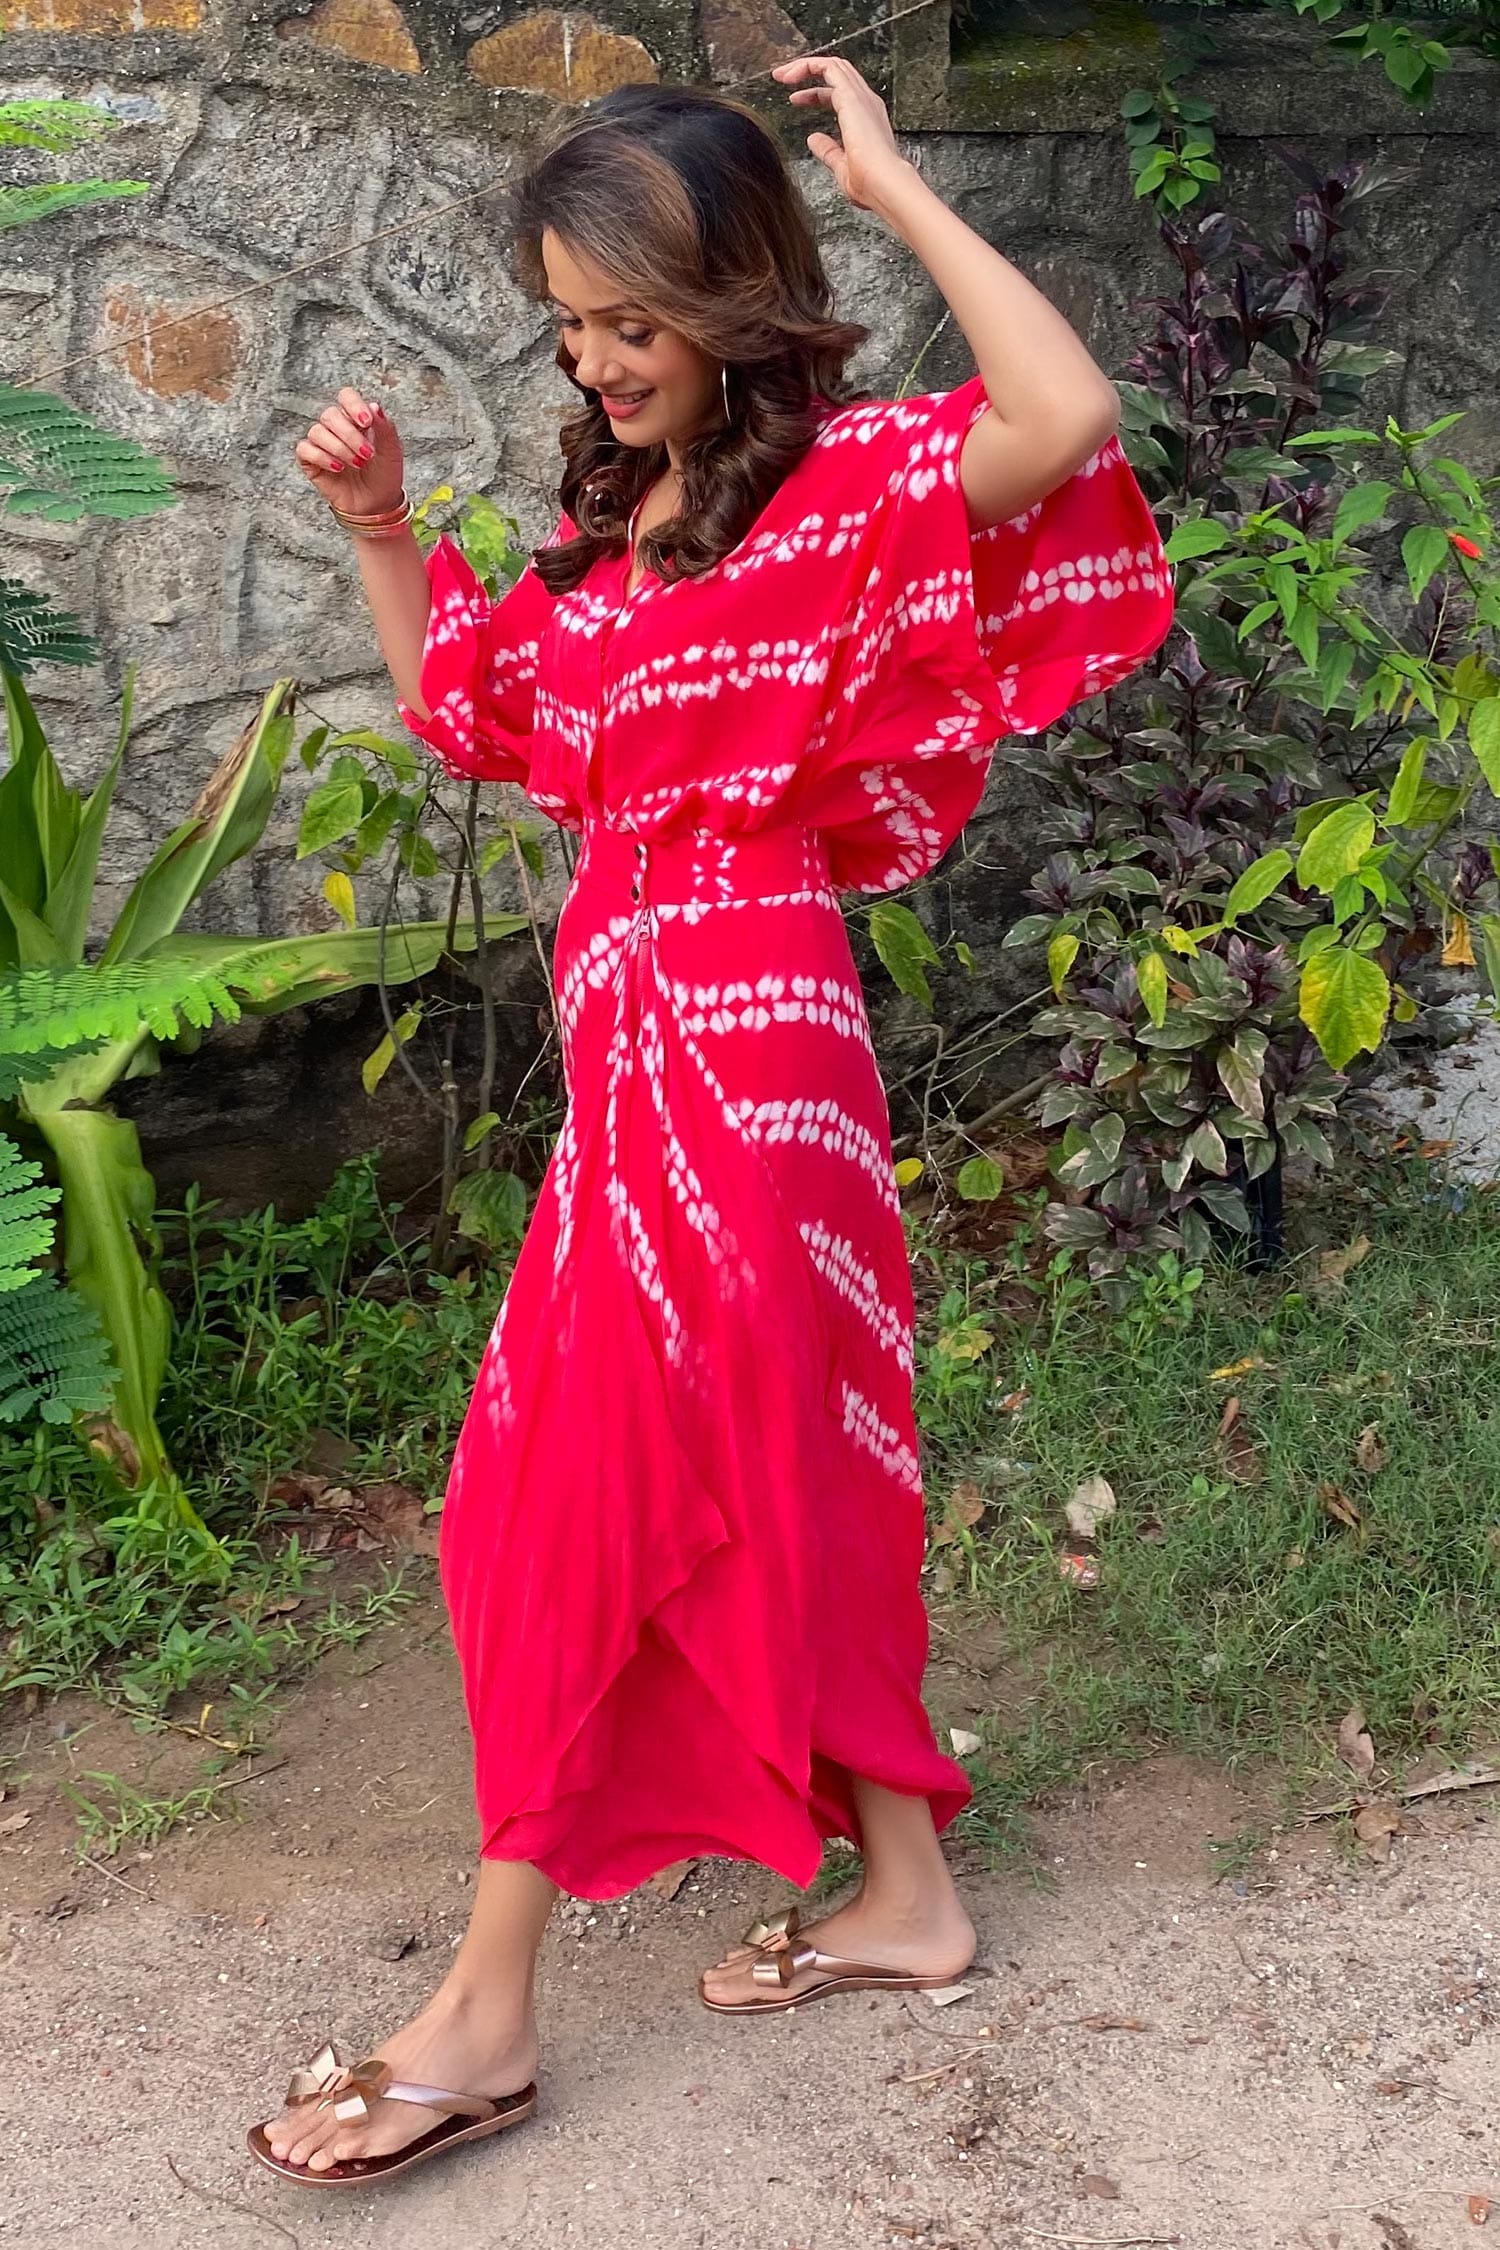 Victoria Sheath Dress as seen on Nupur Sanon – Aapro